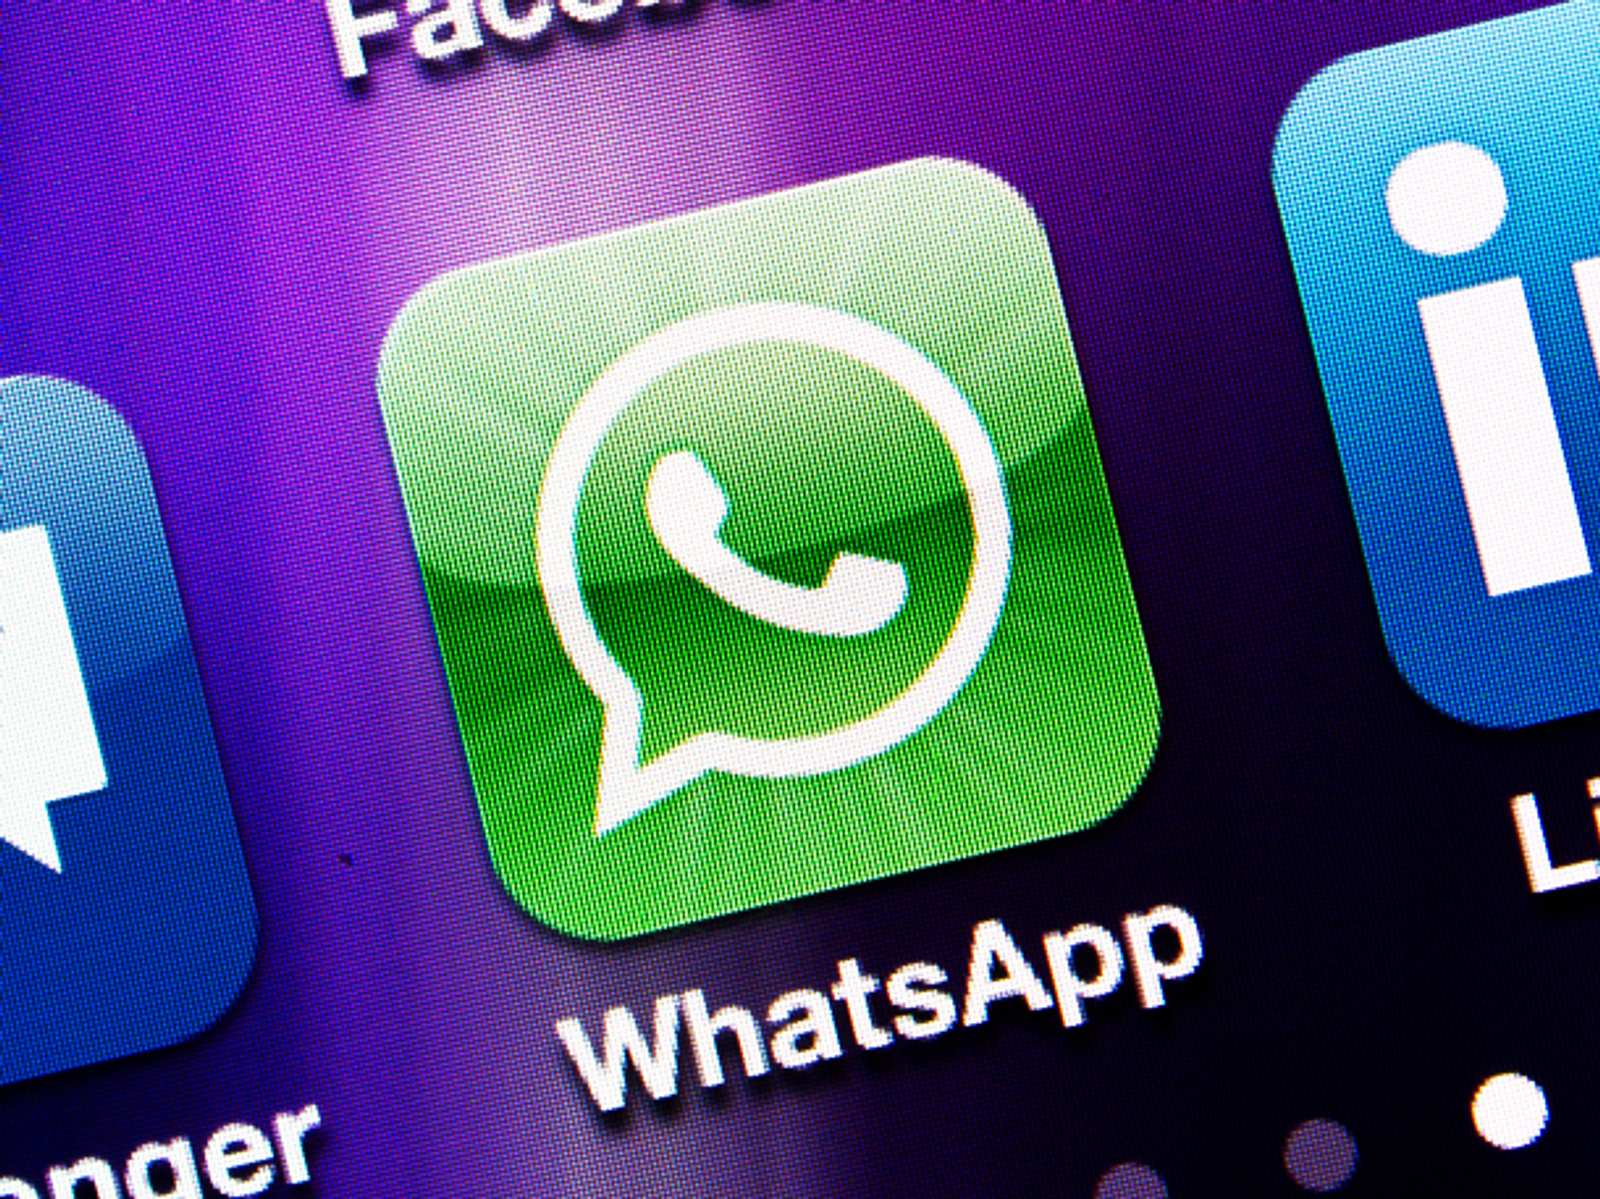 Whatsapp nachrichten schreiben ohne online zu sein